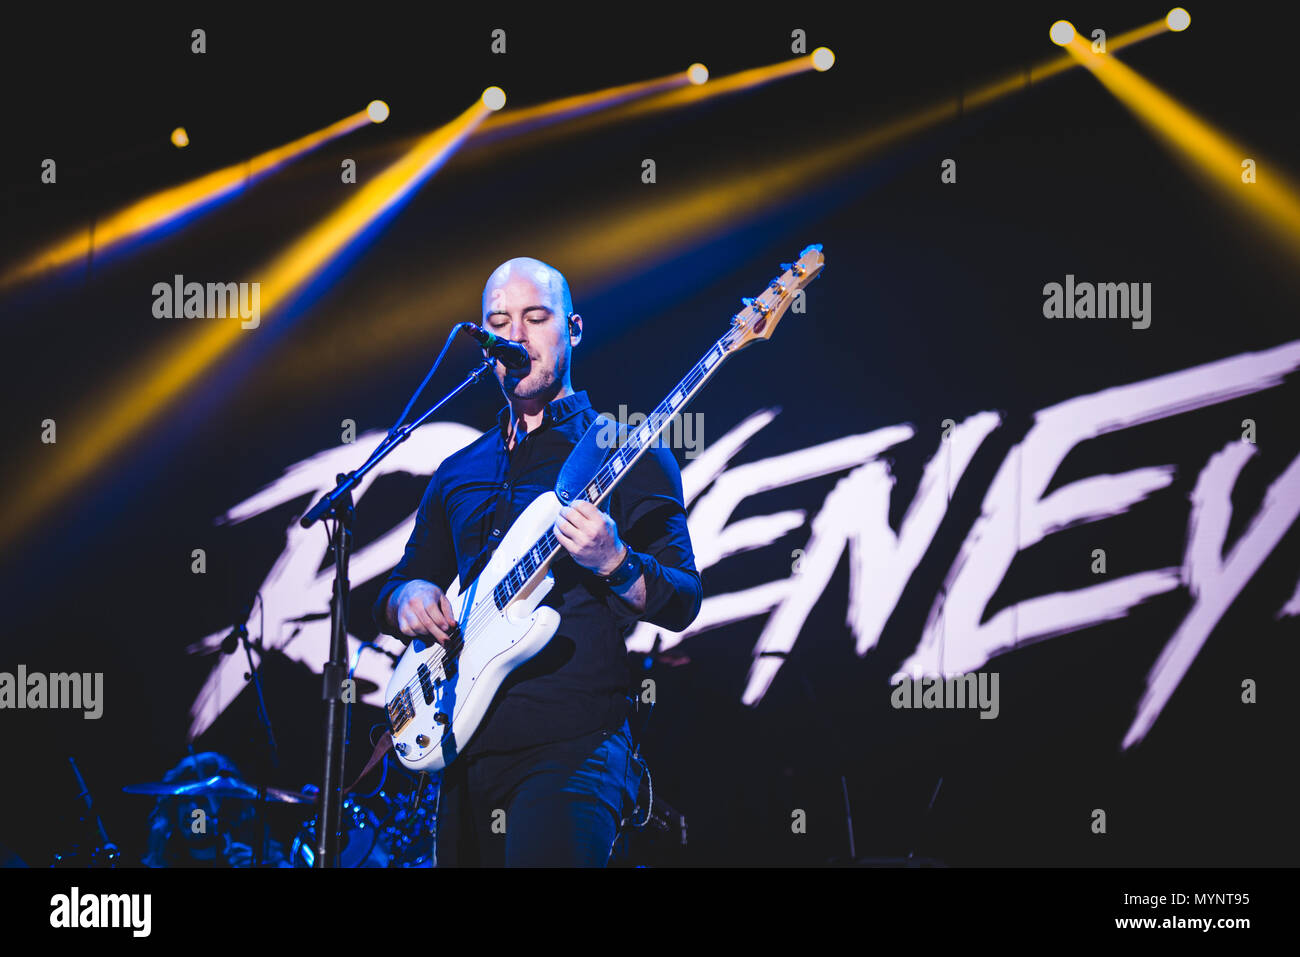 Italien: 2017 Februar 2nd: Die englische Rockband Raveneye dargestellt, die live auf der Bühne im Pala Alpitour, Öffnung für die Kiss' World Tour 2017 Stockfoto